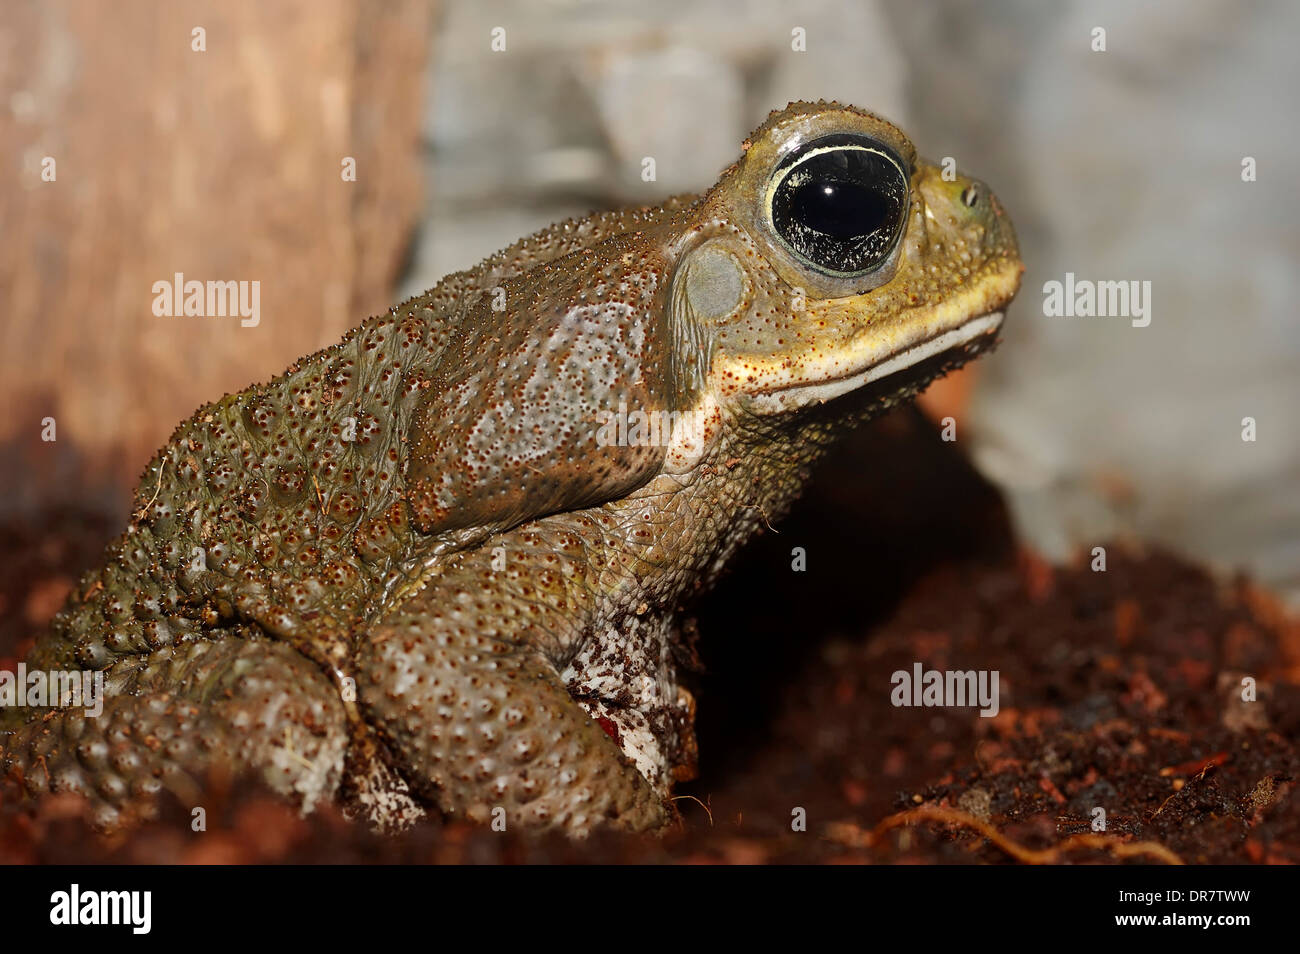 La canna da zucchero Toad (Bufo marinus, Rhinella marina), originario del Sud America, captive Foto Stock